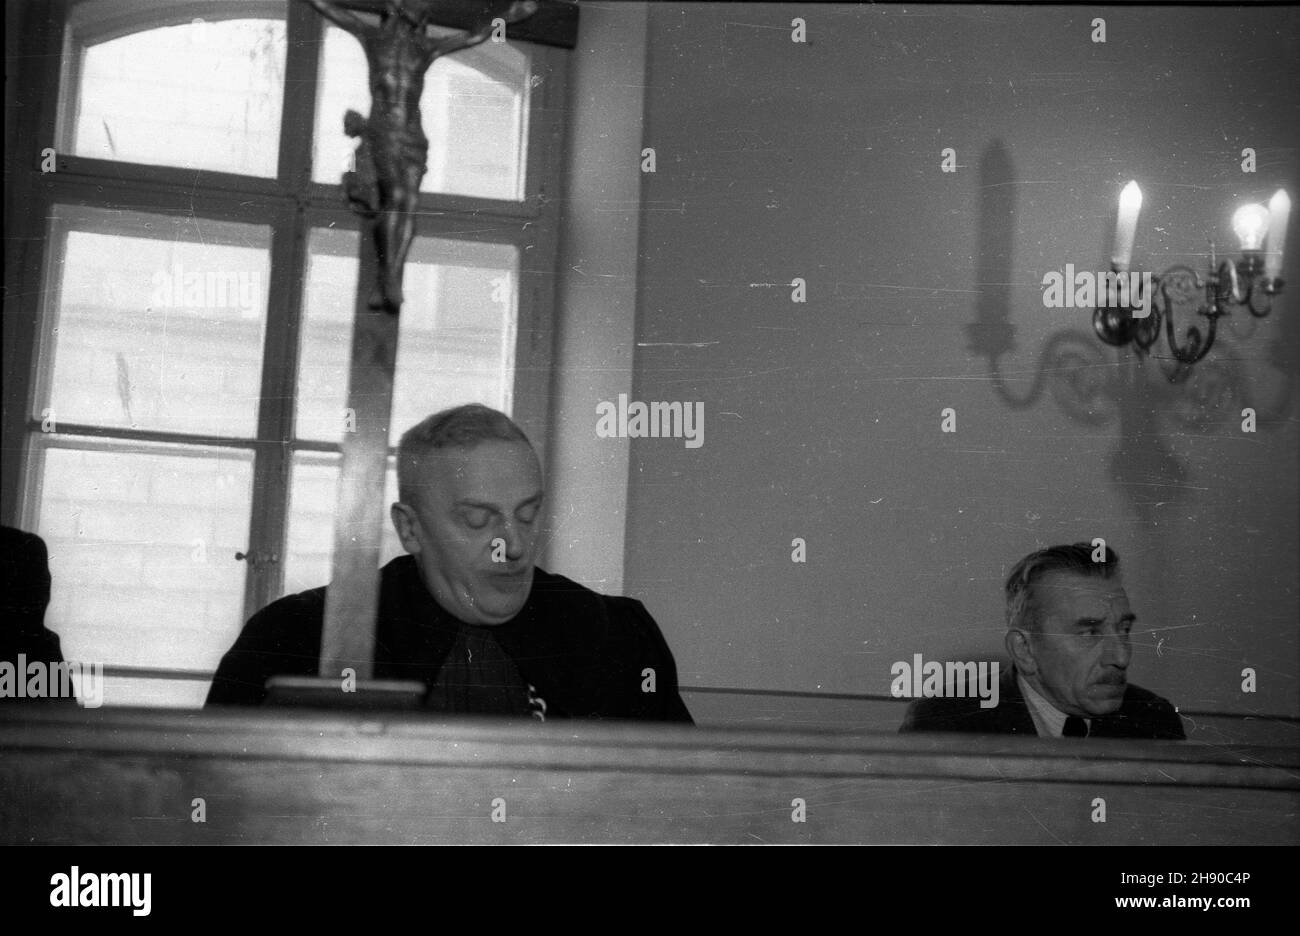 Kraków, 1947. Drugi proces zbrodniarzy oœwiêcimskich przed Najwy¿szym Trybuna³em Narodowym (25.11.1946 - 16.12 1947, og³oszenie wyroku 22.12.1947). Nz. sêdziowie. bb/gr  PAP      Cracow, 1947. The 2nd trial of criminals from German Nazi death camp in Auschwitz before the Highest National Tribunal held between Nov. 25, 1946 and December 16, 1947. The verdict was announced on December 22, 1947. Pictured: judges.  bb/gr  PAP Stock Photo